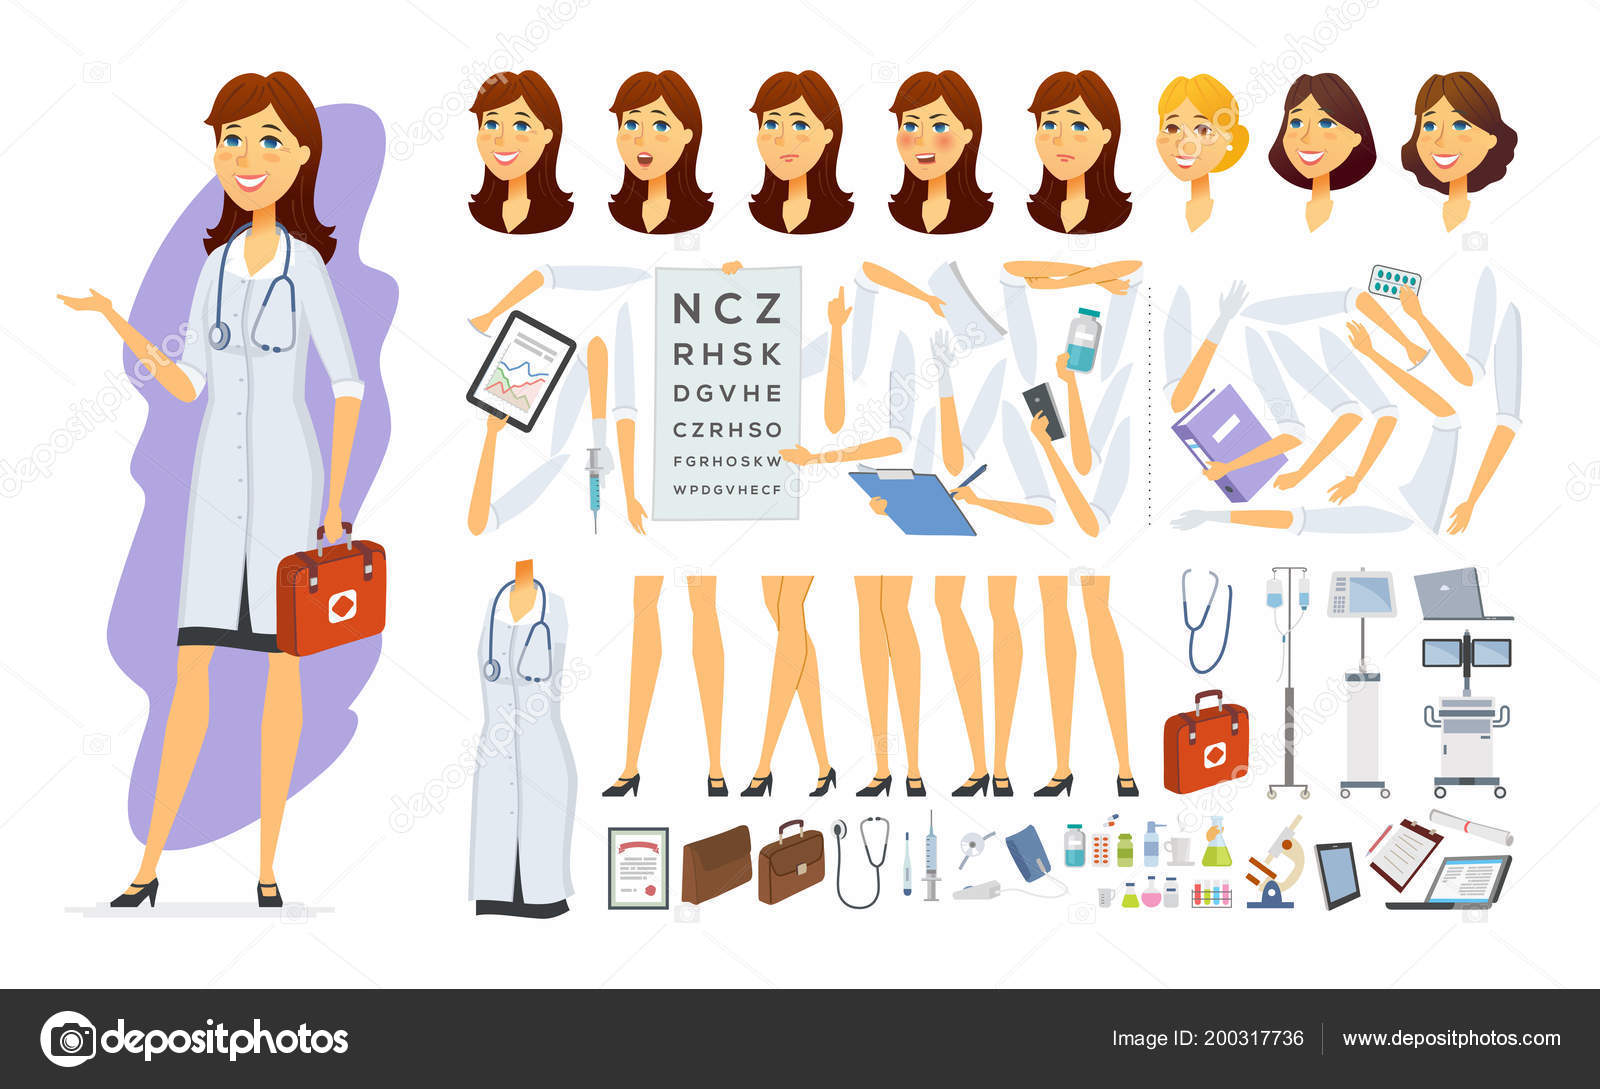 Um personagem de desenho animado médico feminino em fundo branco